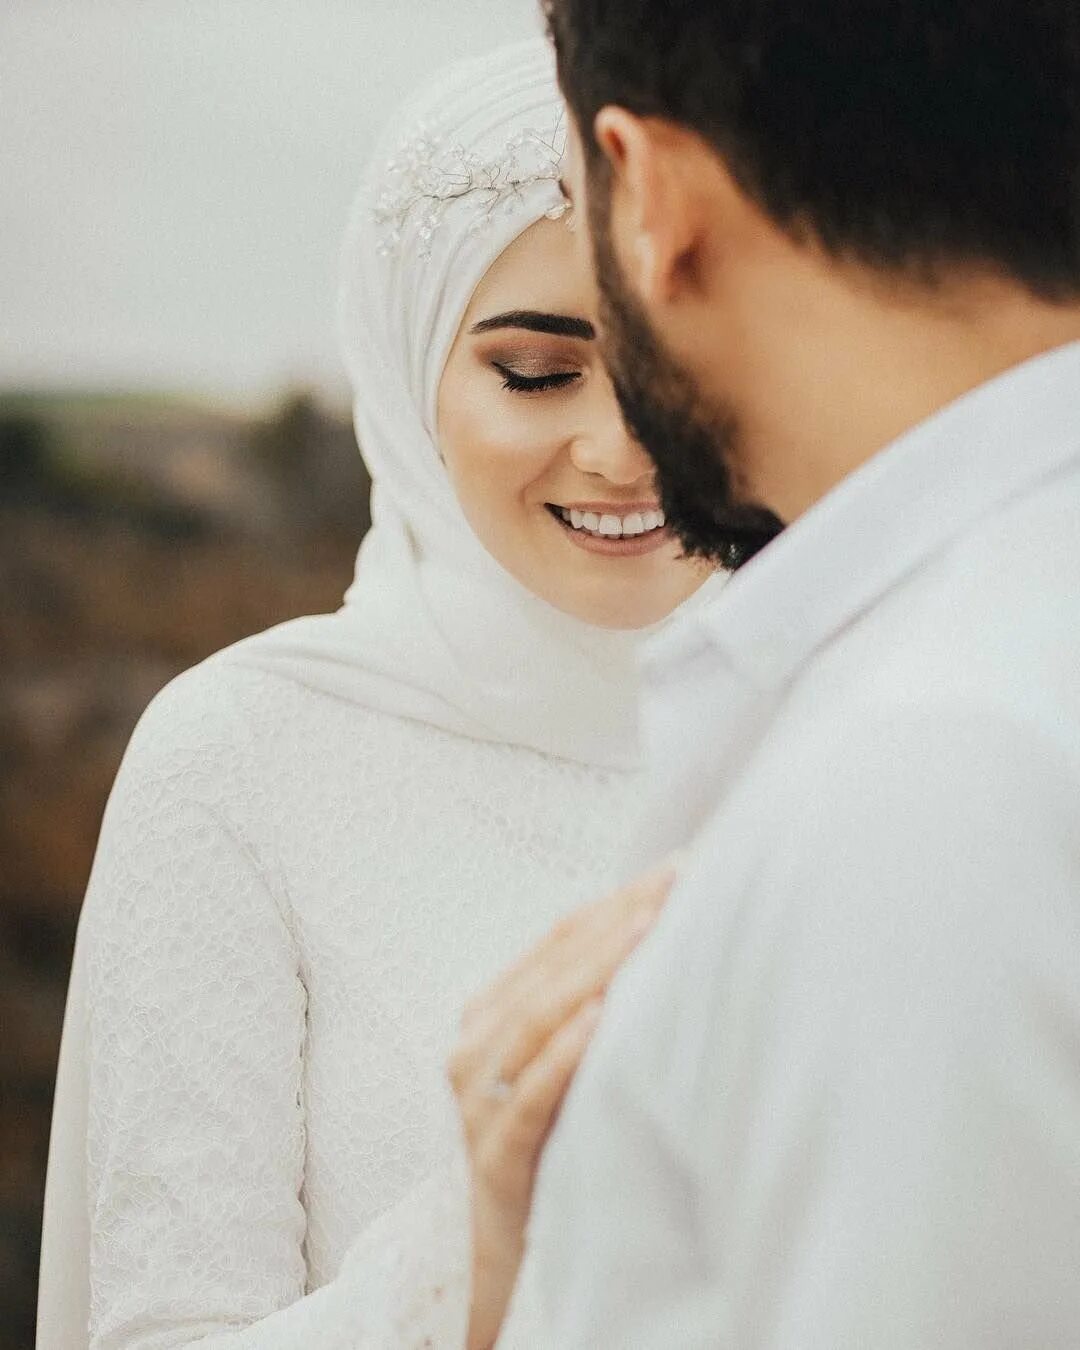 Мусульманская счастья. Мусульманские пары.